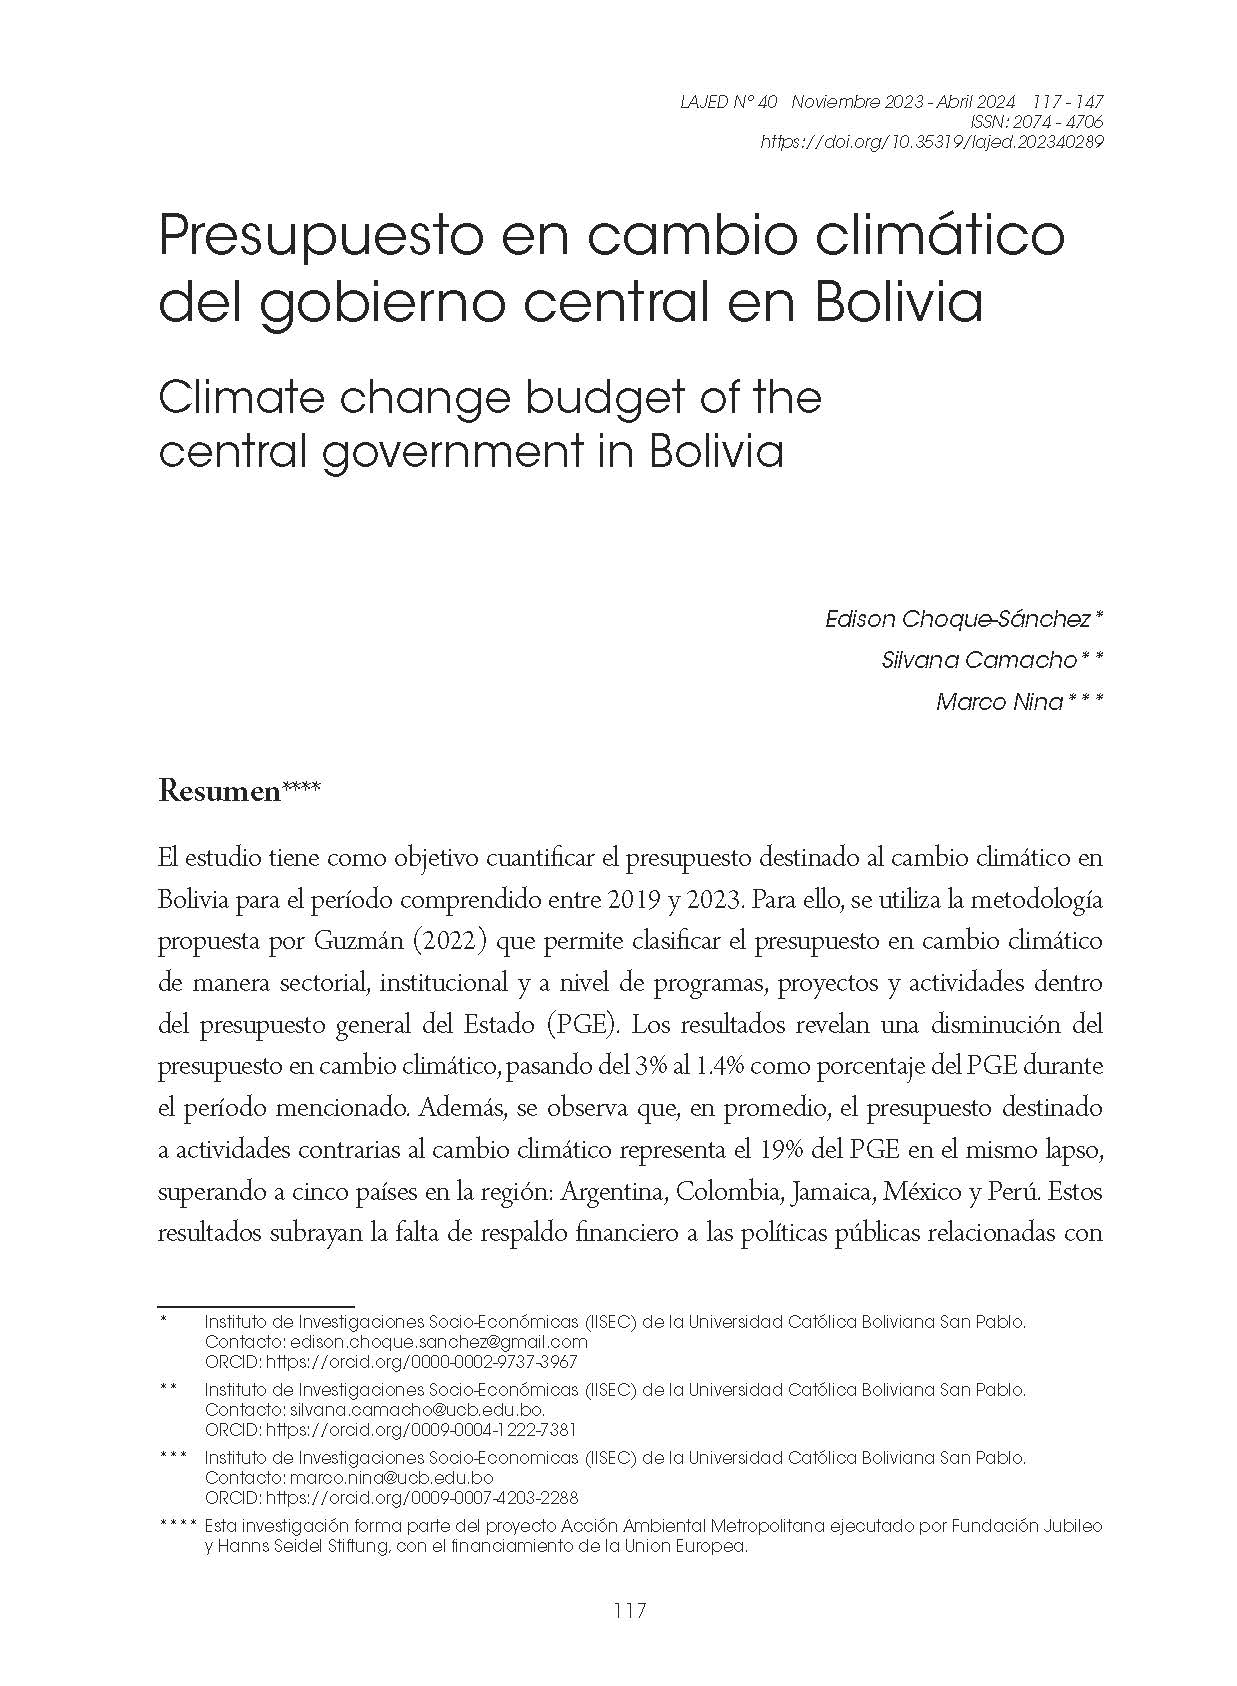 Presupuesto en cambio climático del gobierno central en Bolivia